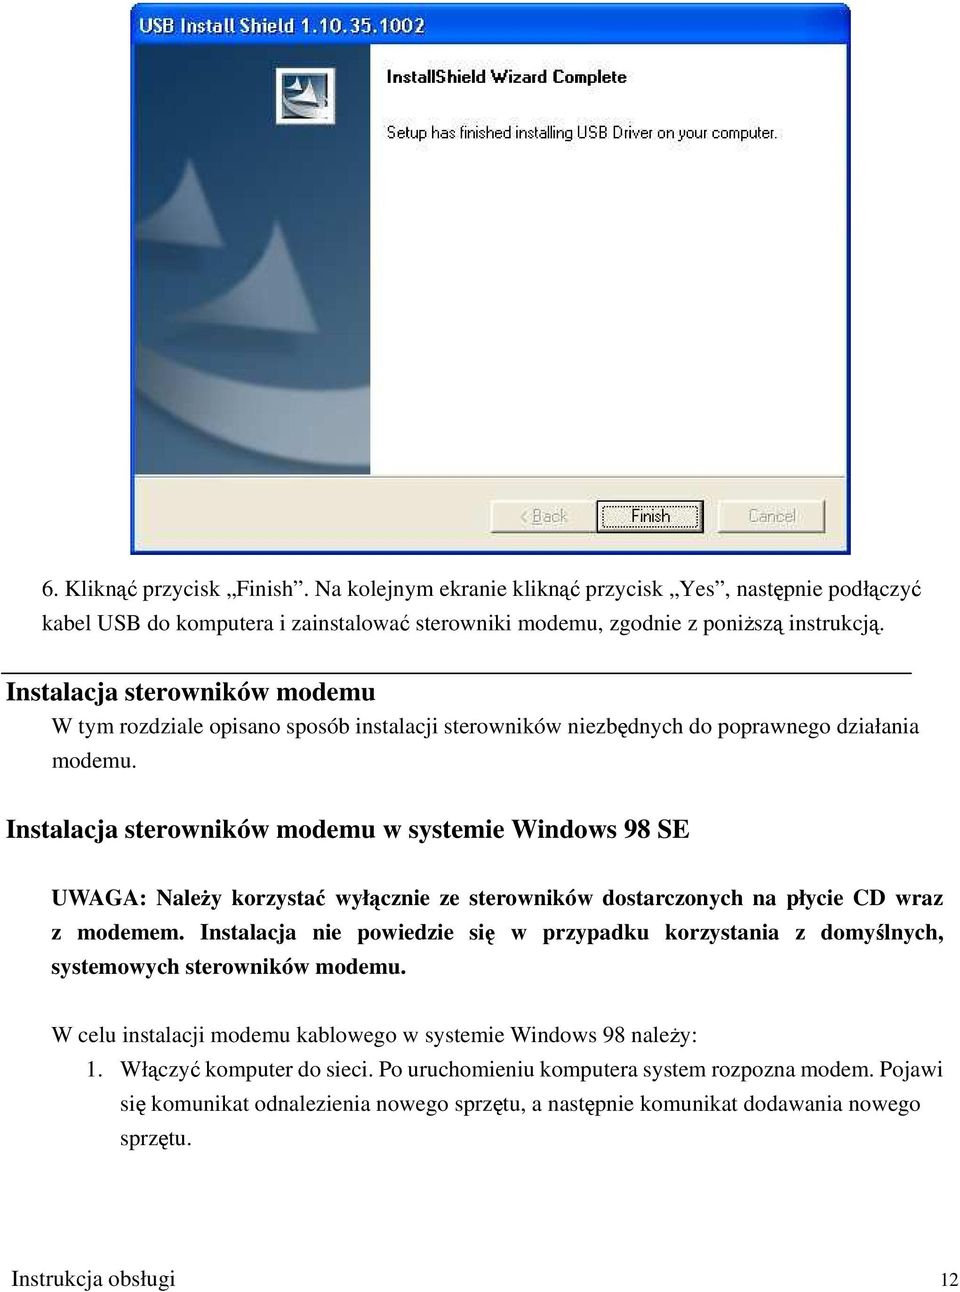 Instalacja sterowników modemu w systemie Windows 98 SE UWAGA: Należy korzystać wyłącznie ze sterowników dostarczonych na płycie CD wraz z modemem.